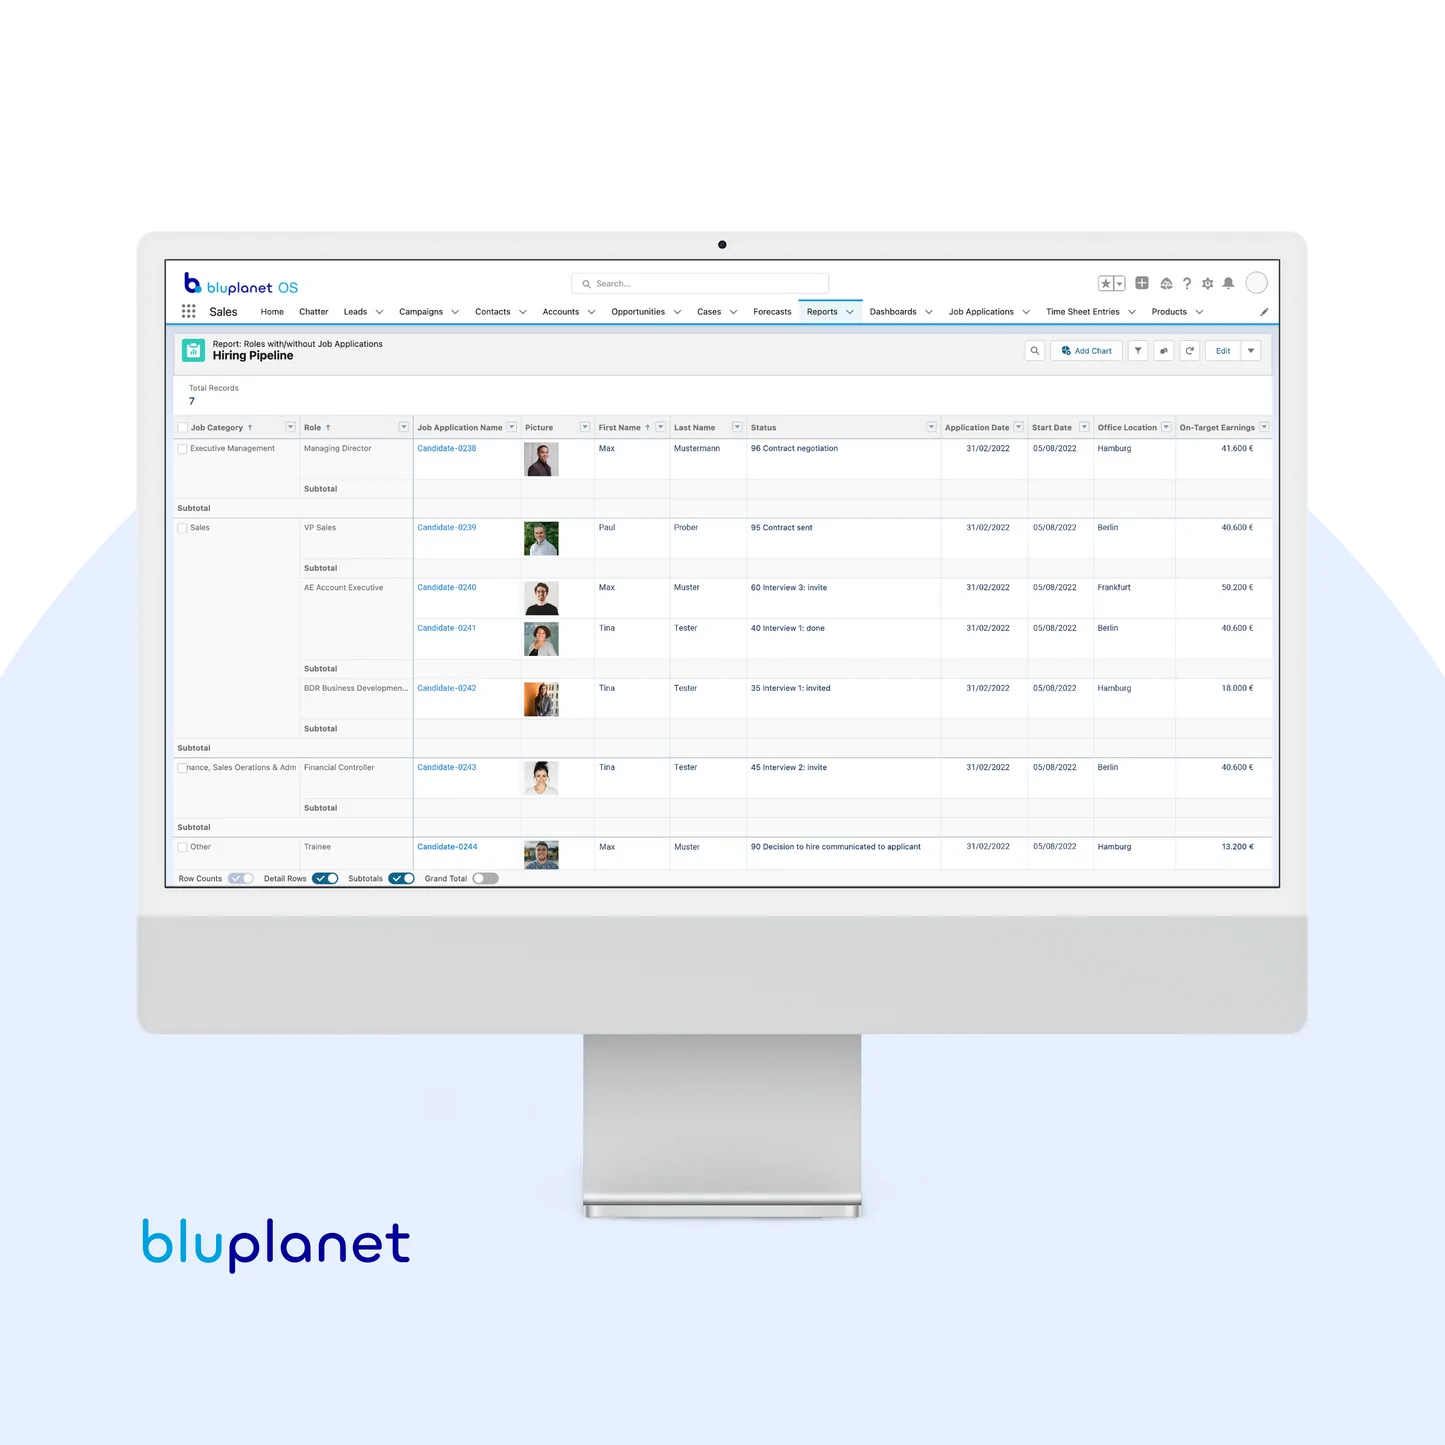 bluplanet OS: Salesforce Add-on (ATS)